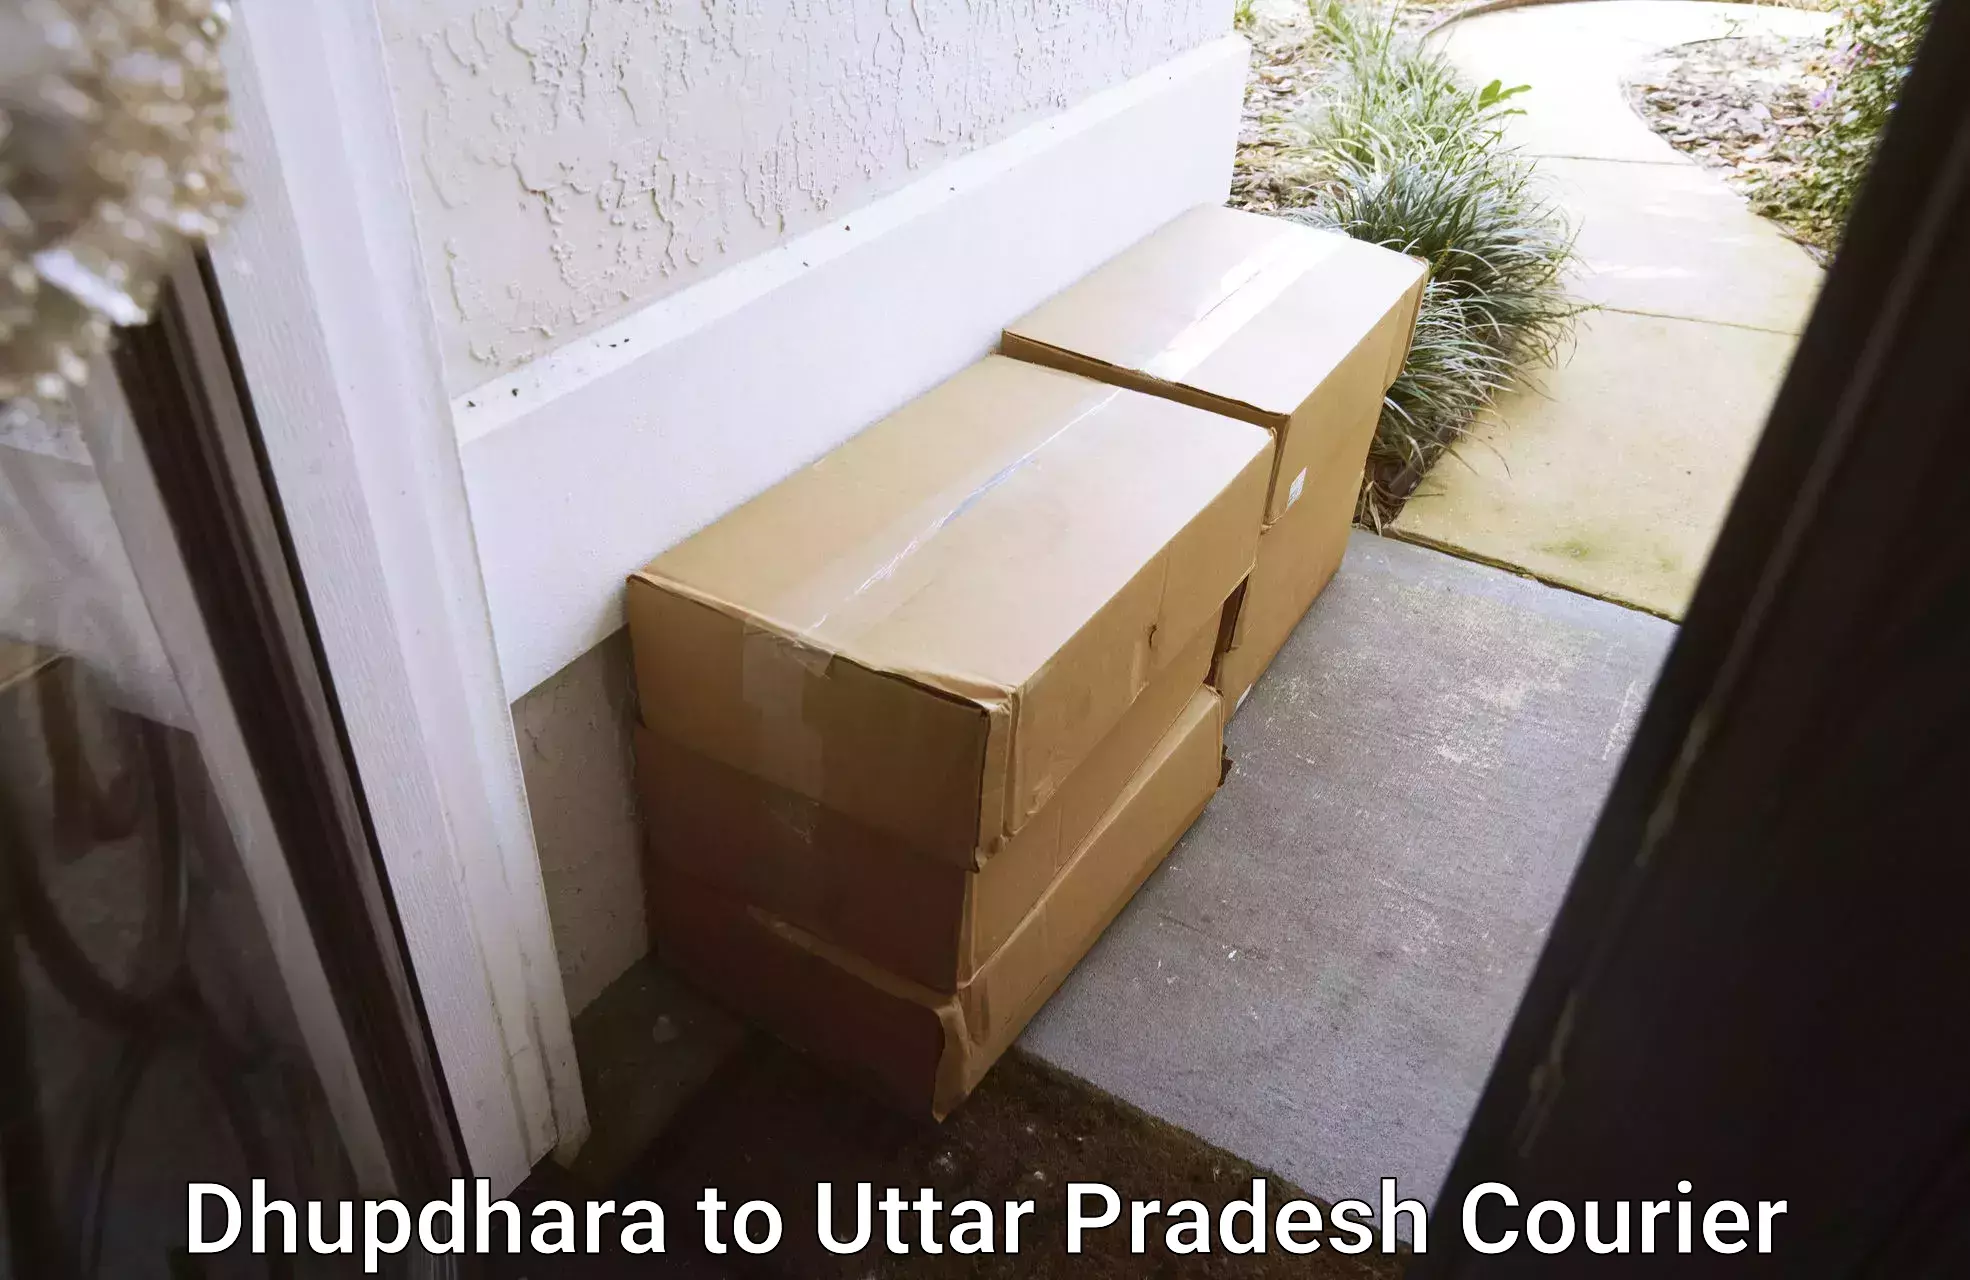 Urgent courier needs Dhupdhara to Thanabhawan